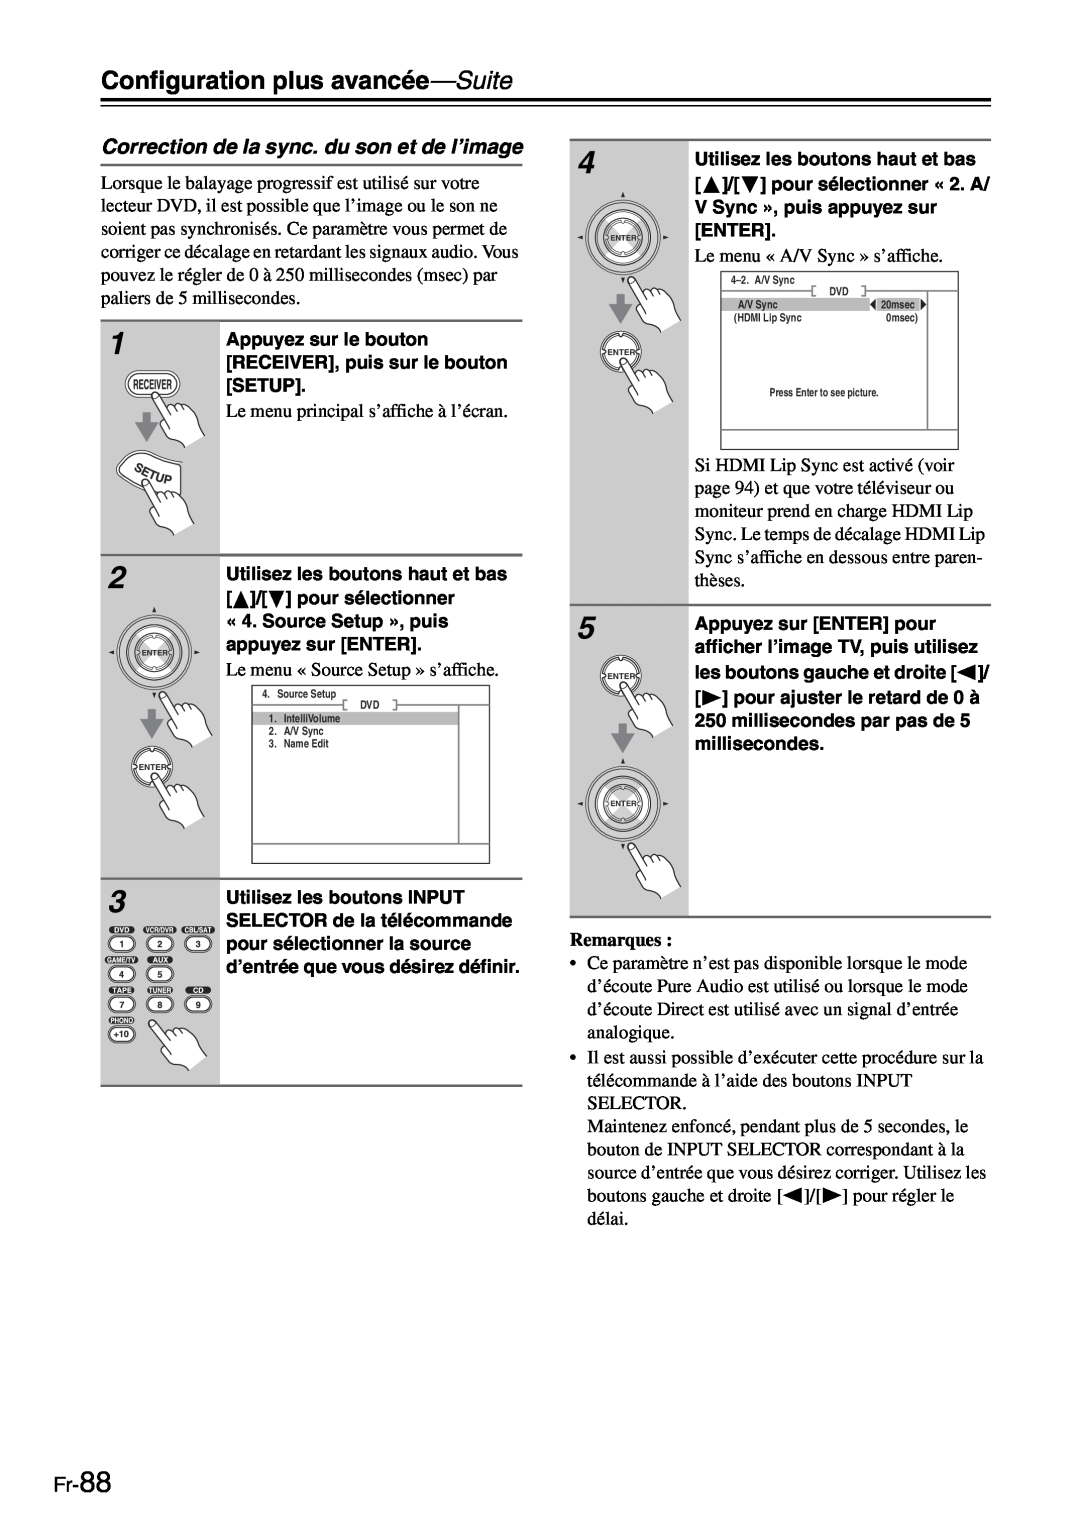 Onkyo TX-SR705 manual Correction de la sync. du son et de l’image, Fr-88, Configuration plus avancée—Suite, Remarques 